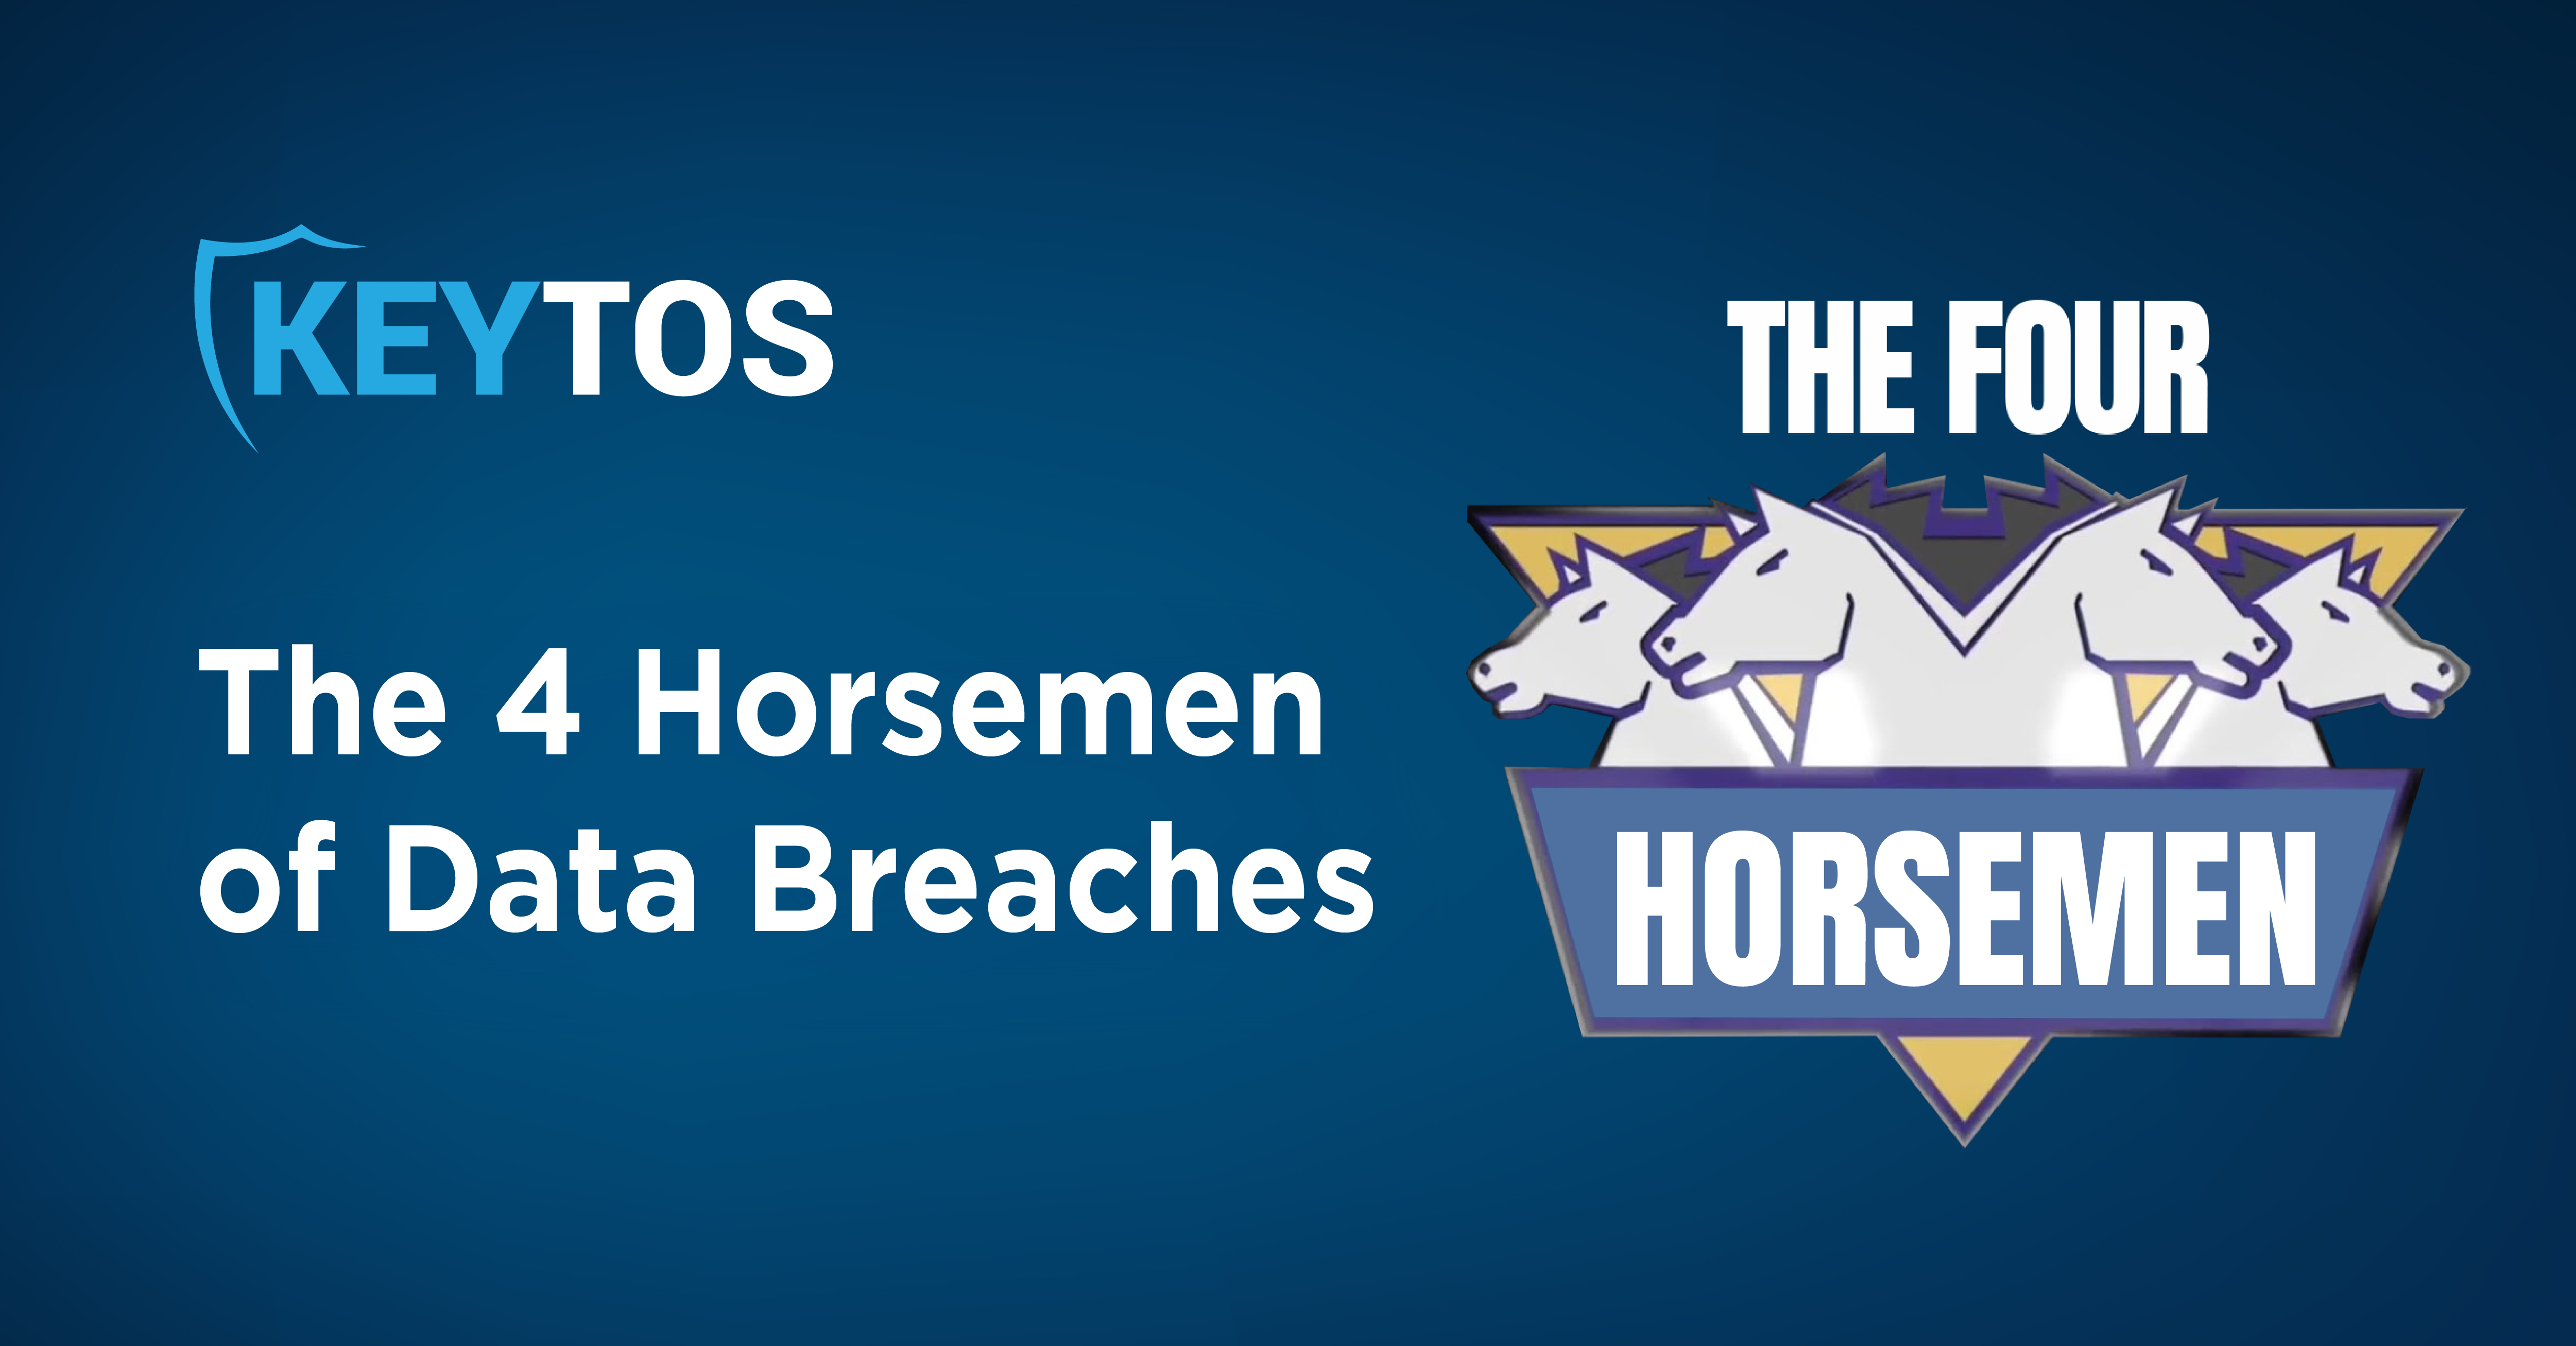 The Four Horsemen of Data Breaches